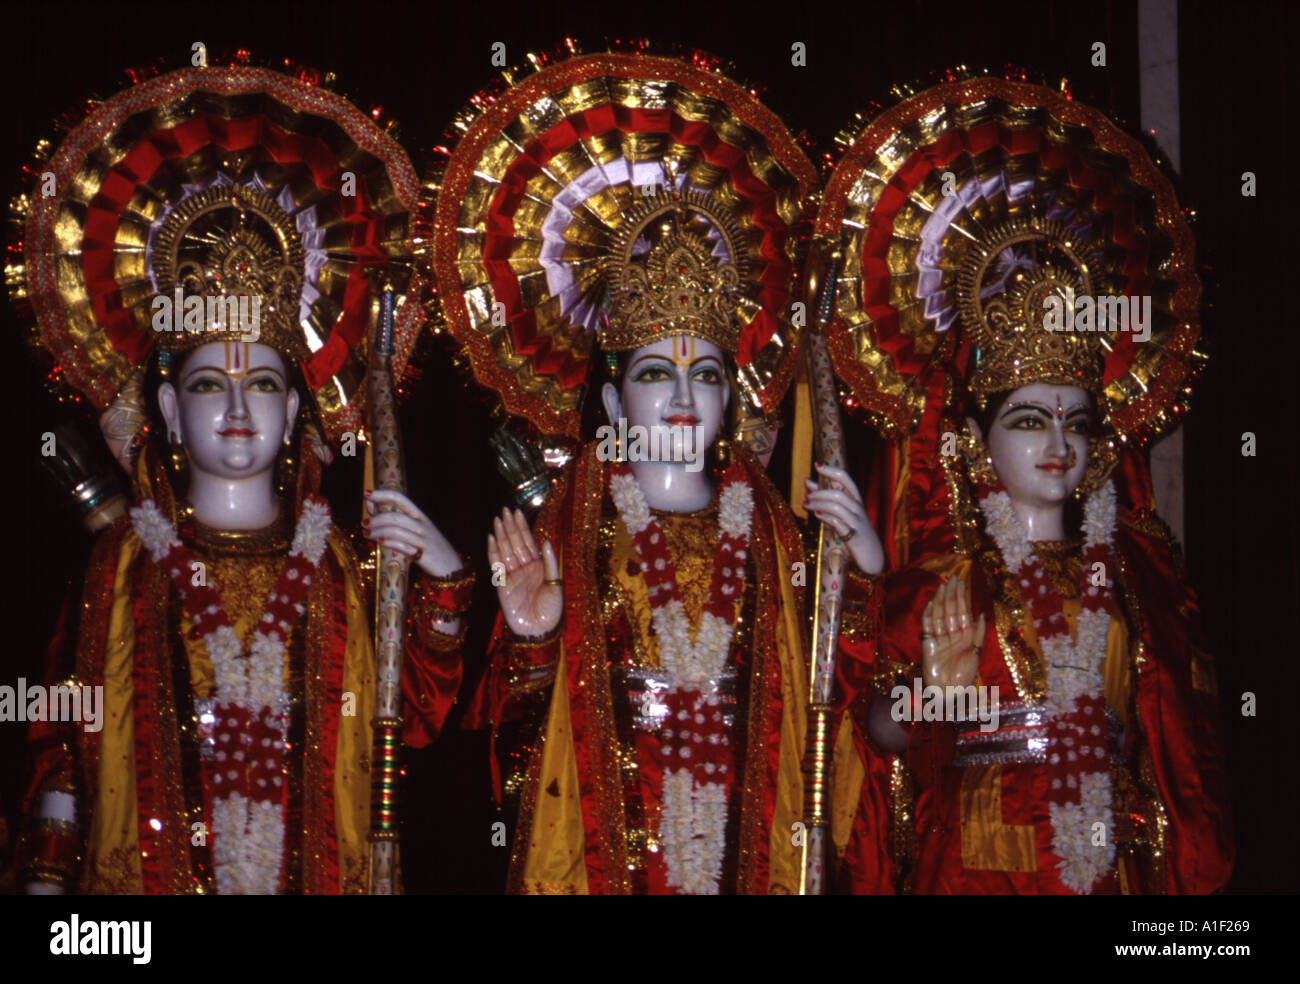 Des dieux hindous importants, RAM centre, Laxman son frère gauche, et sa femme Sita droite Banque D'Images